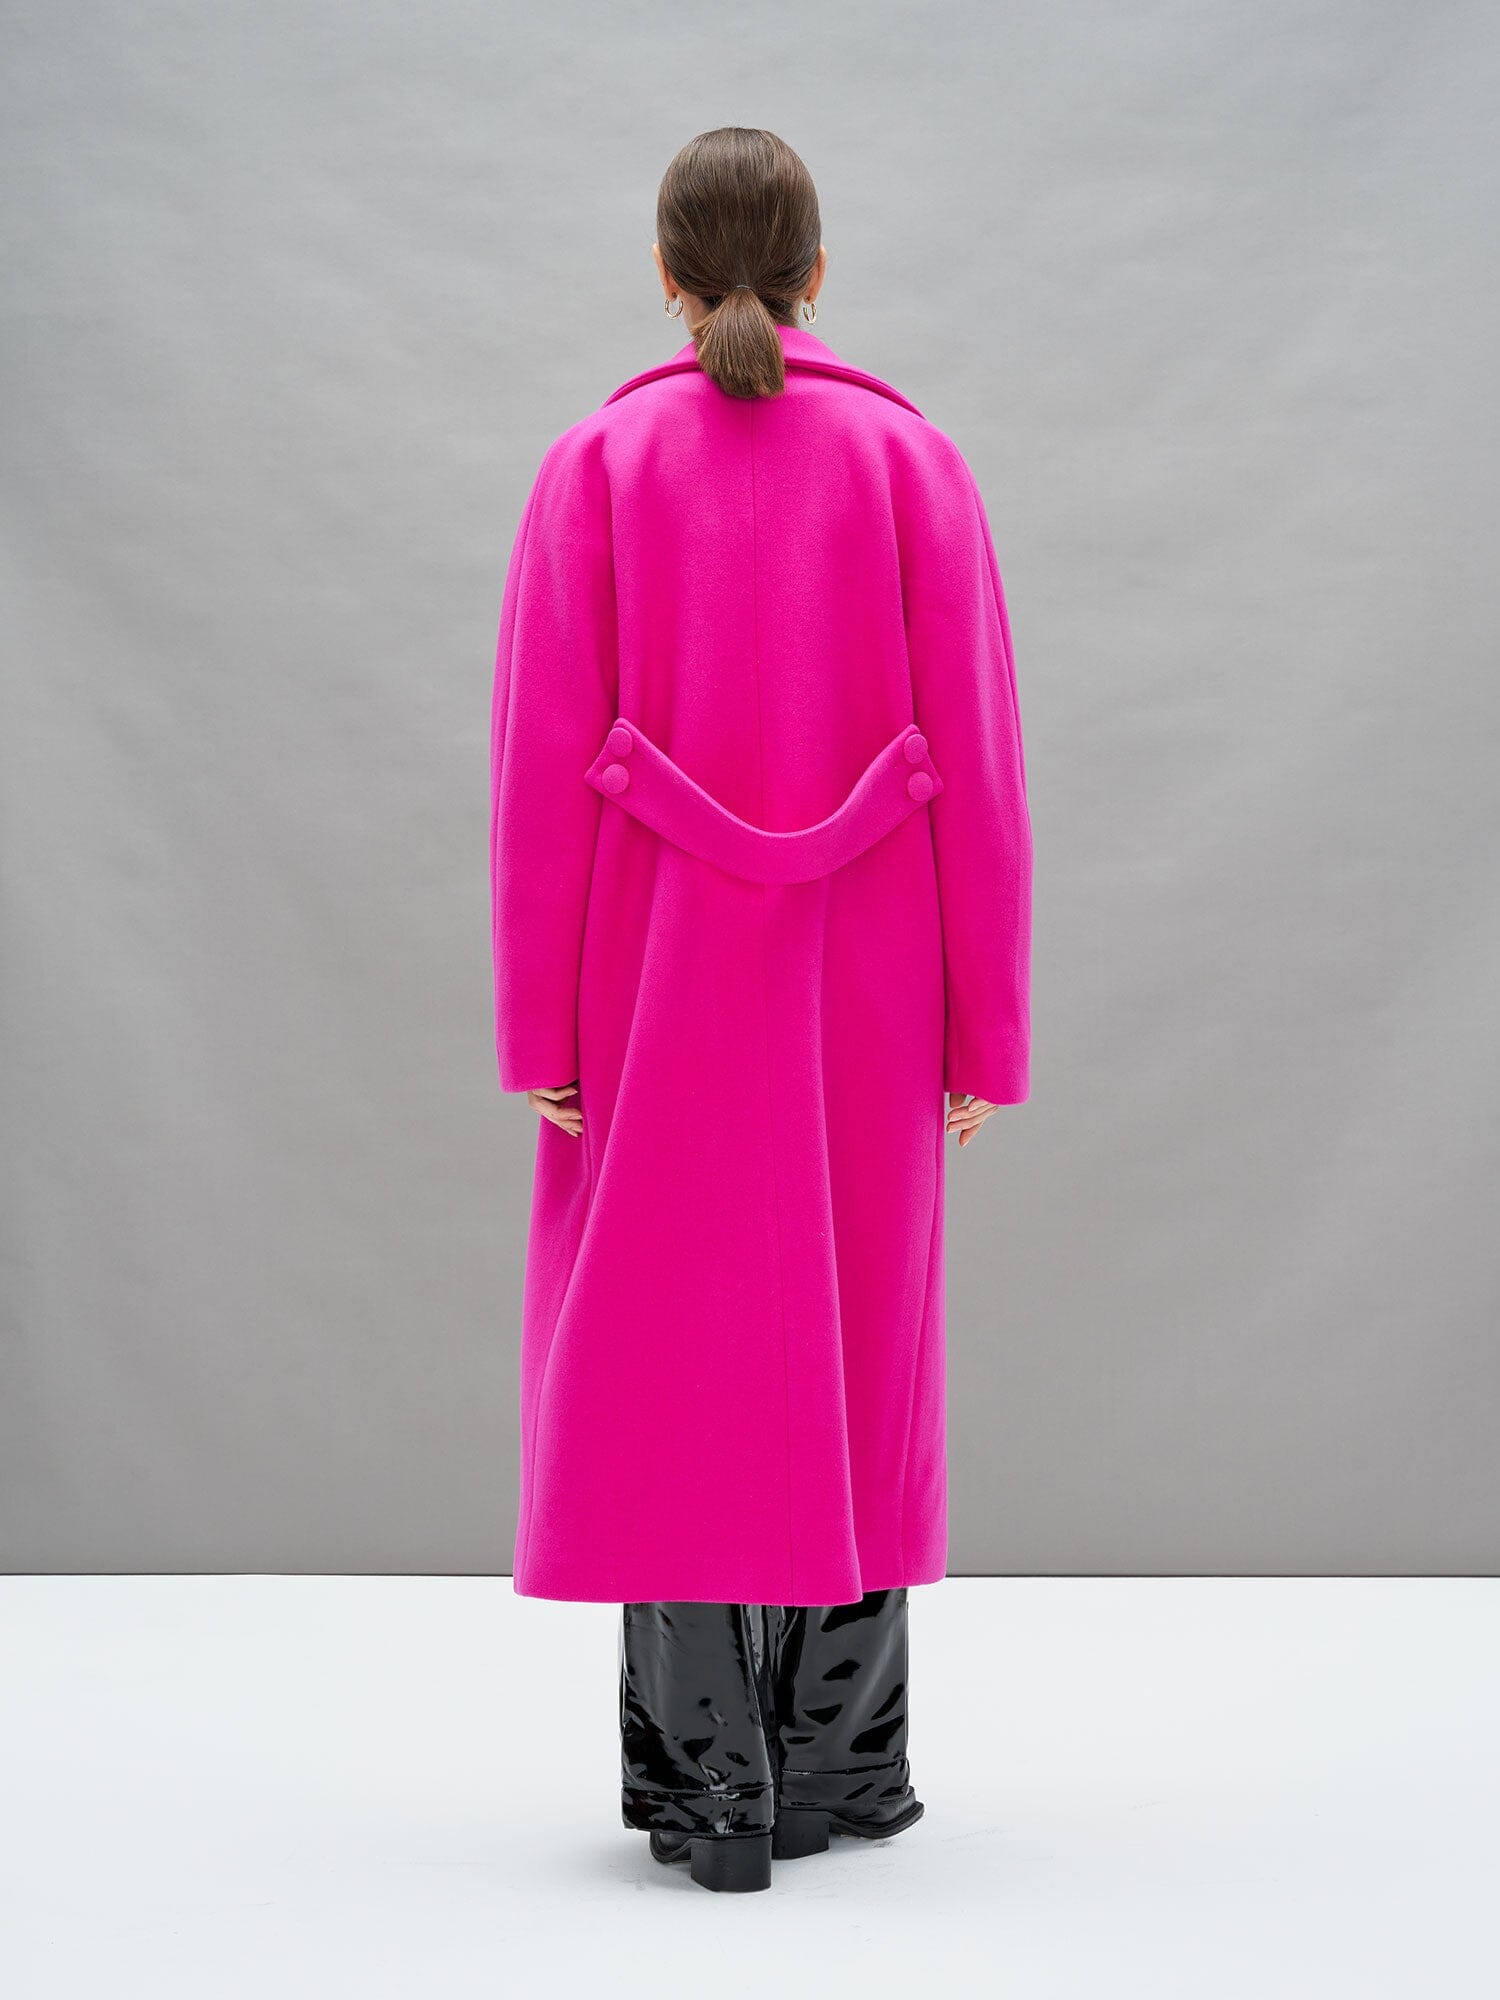 EBONY - Long Oversized Sheath Neck Coat in Virgin Wool Fuchsia Coat Fête Impériale